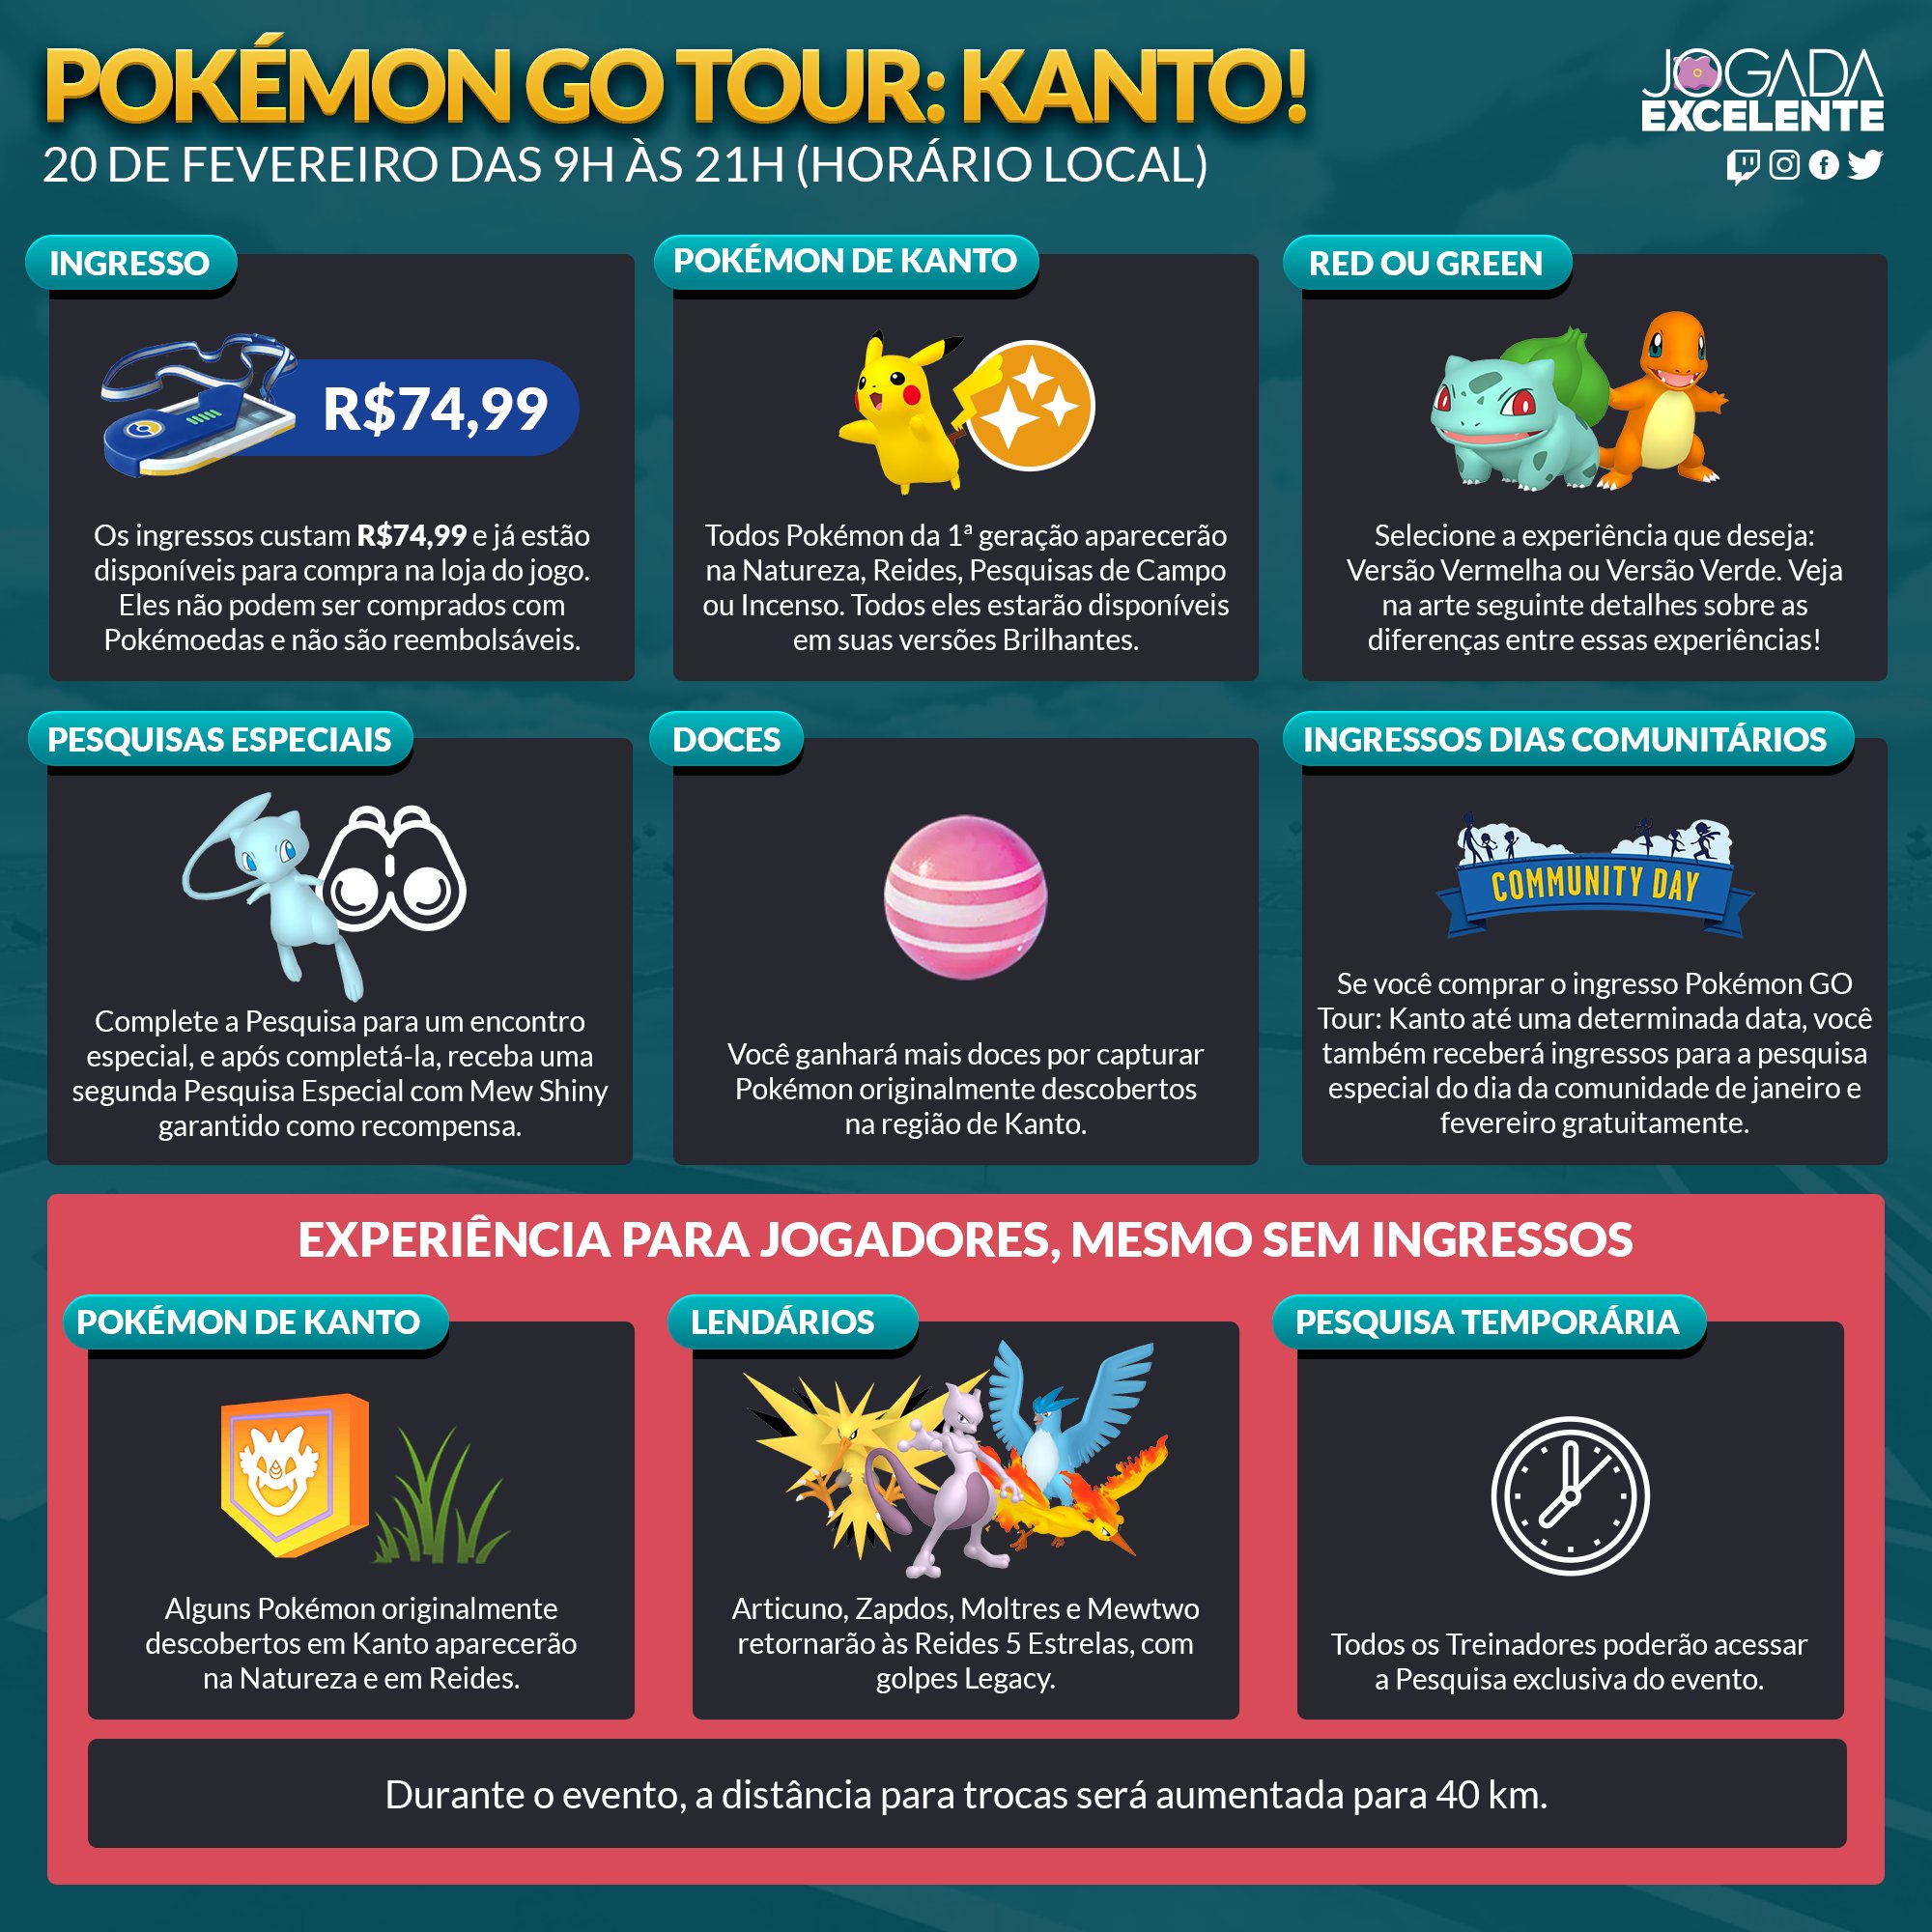 Oficial! Os 8 Pokémon Lendários de Kanto! 